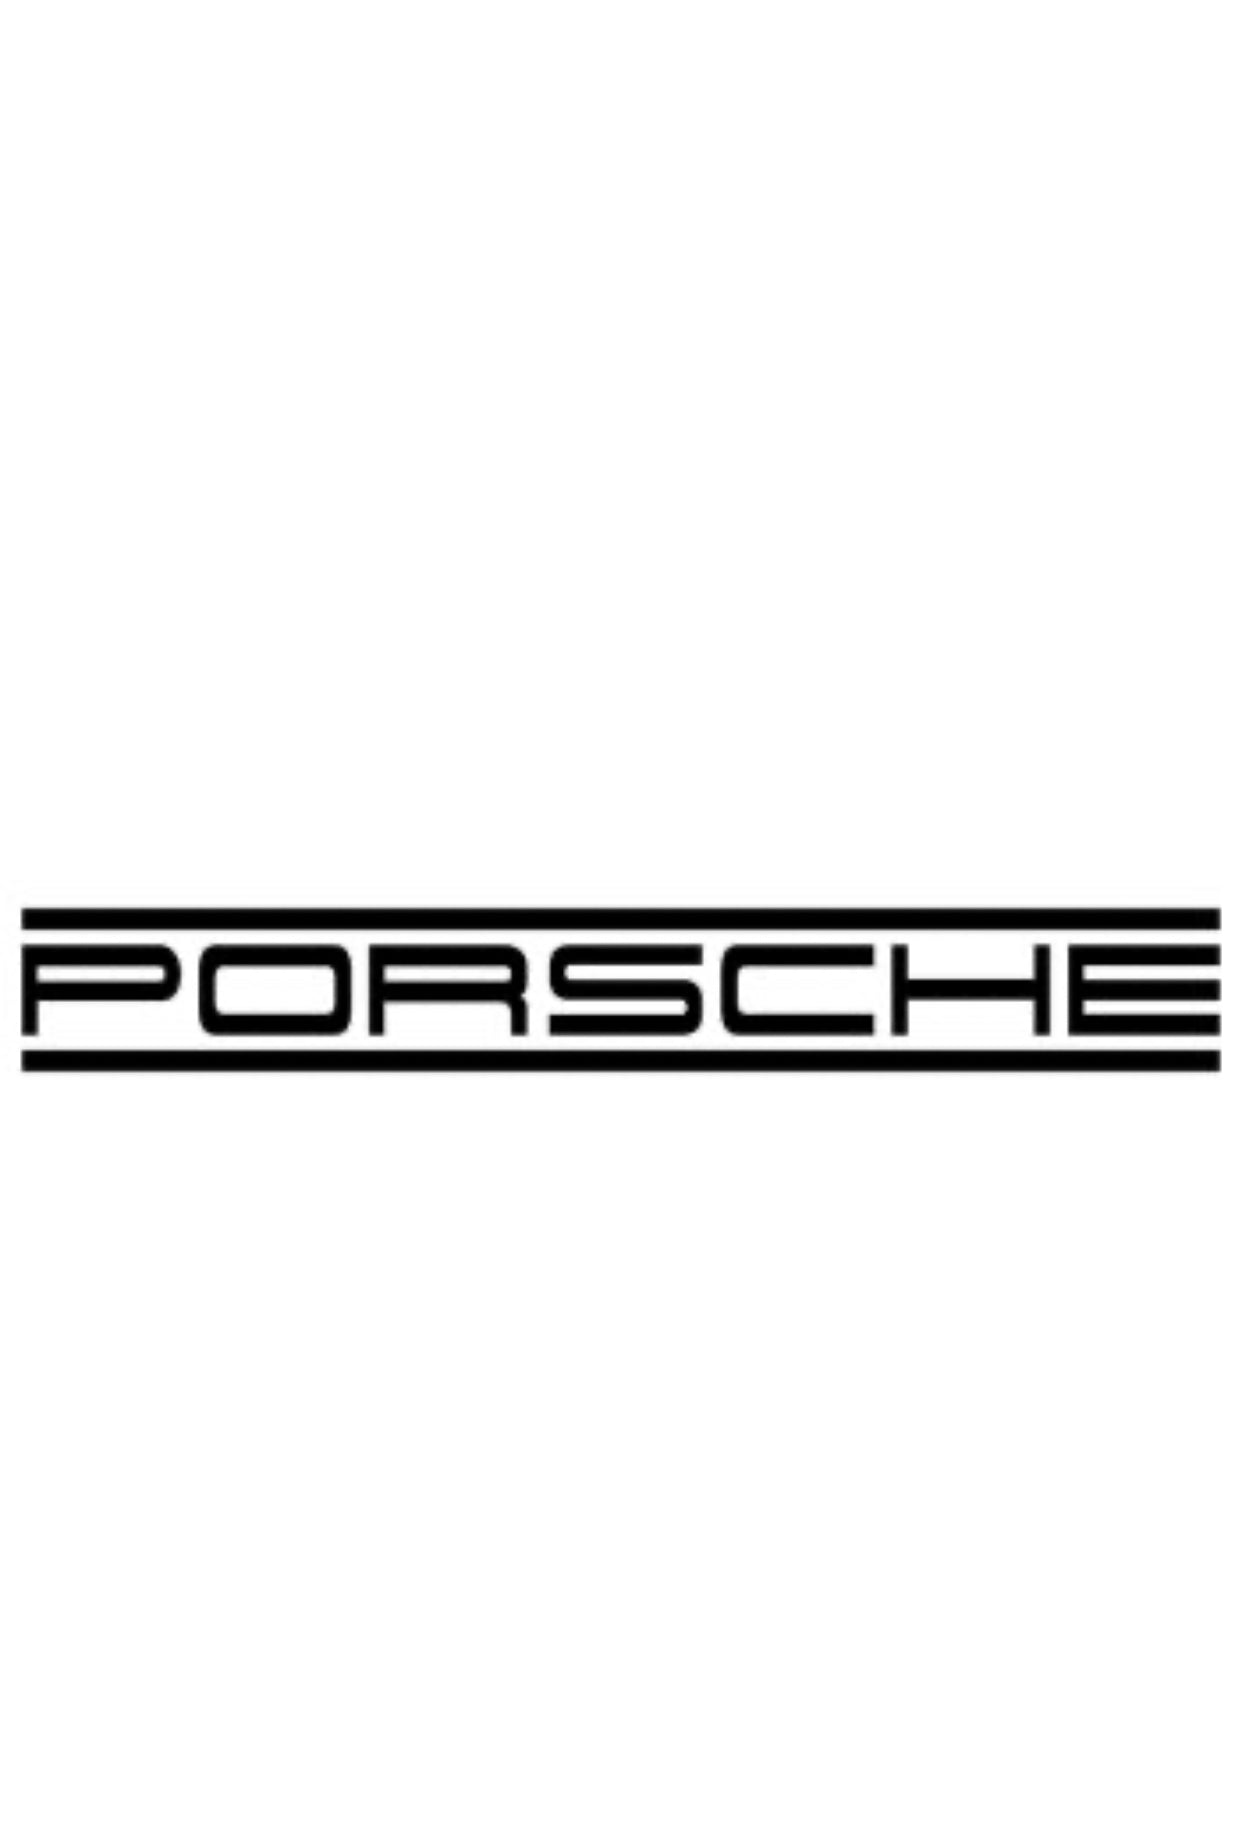 Porsche Cayenne 536 Luftfahrwerk tieferlegen